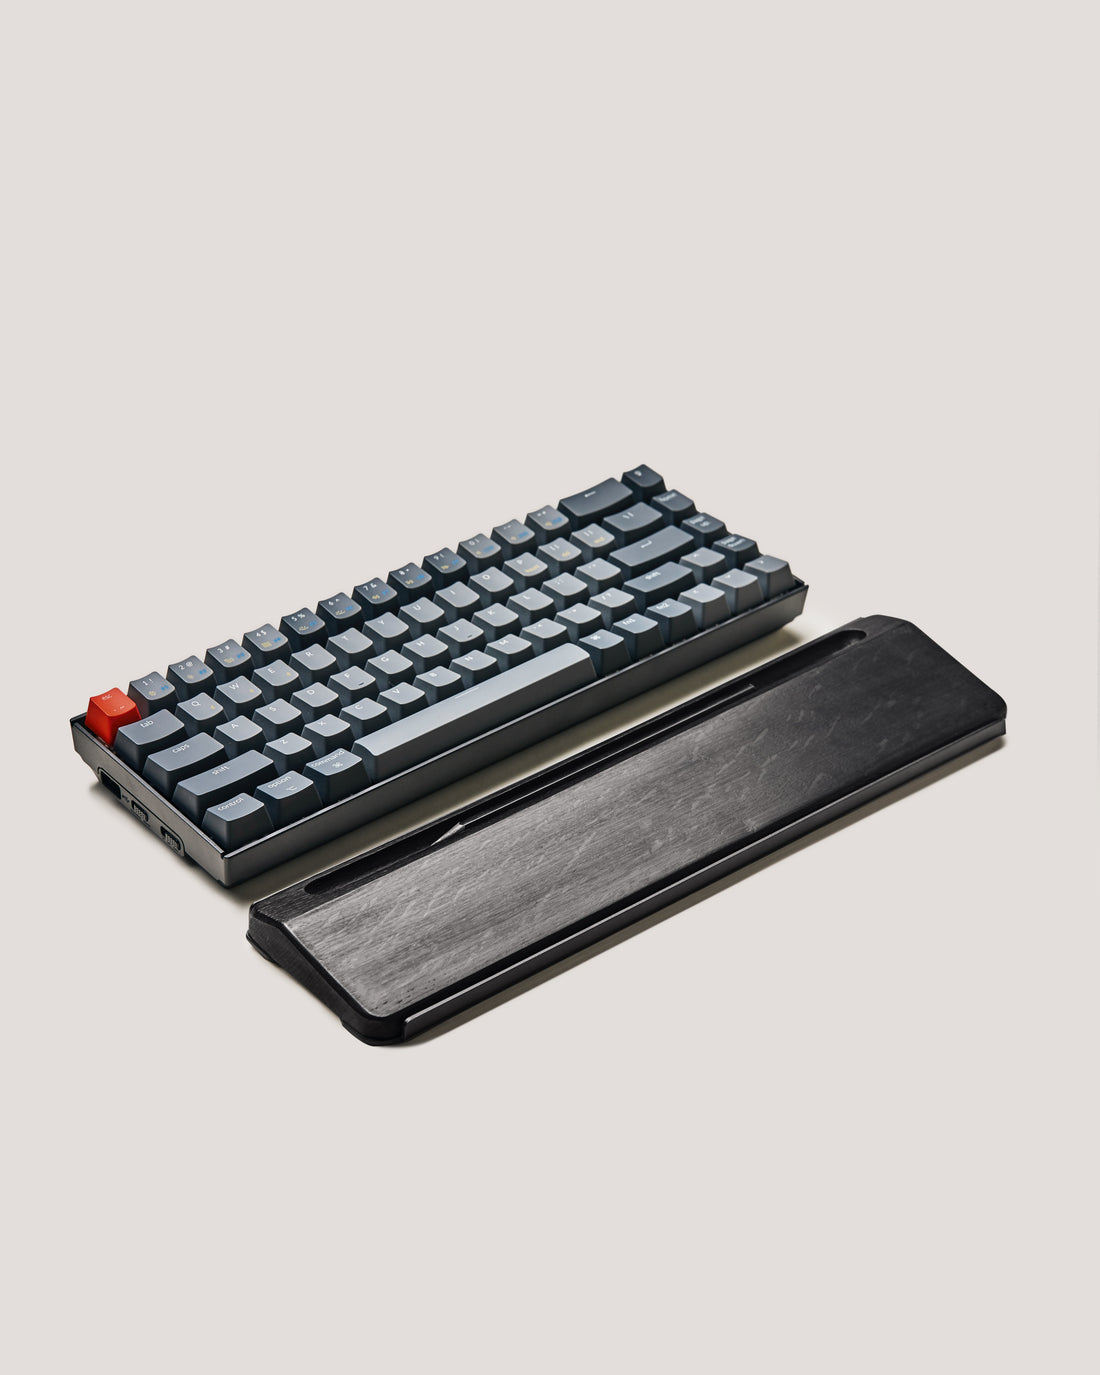 Ease Keyboard Palm Rest (Black Oak)